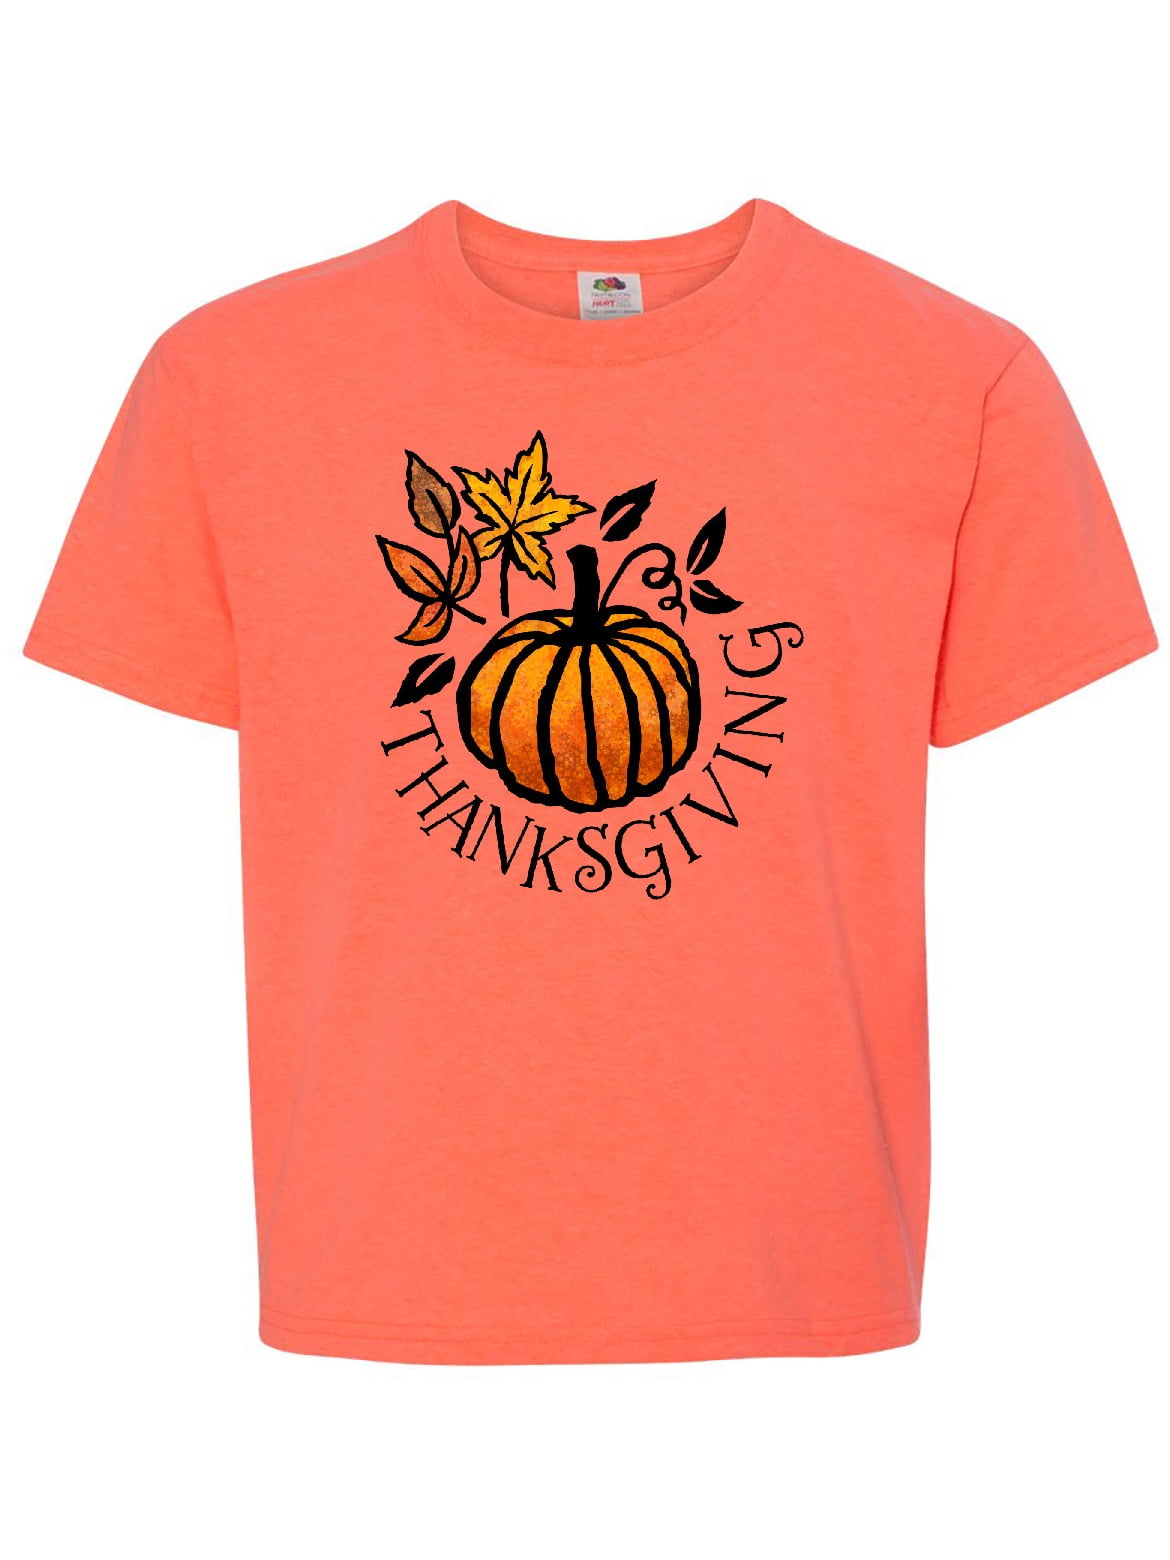 Fall Thankful Pumpkin Short-Sleeve Unisex T-Shirt